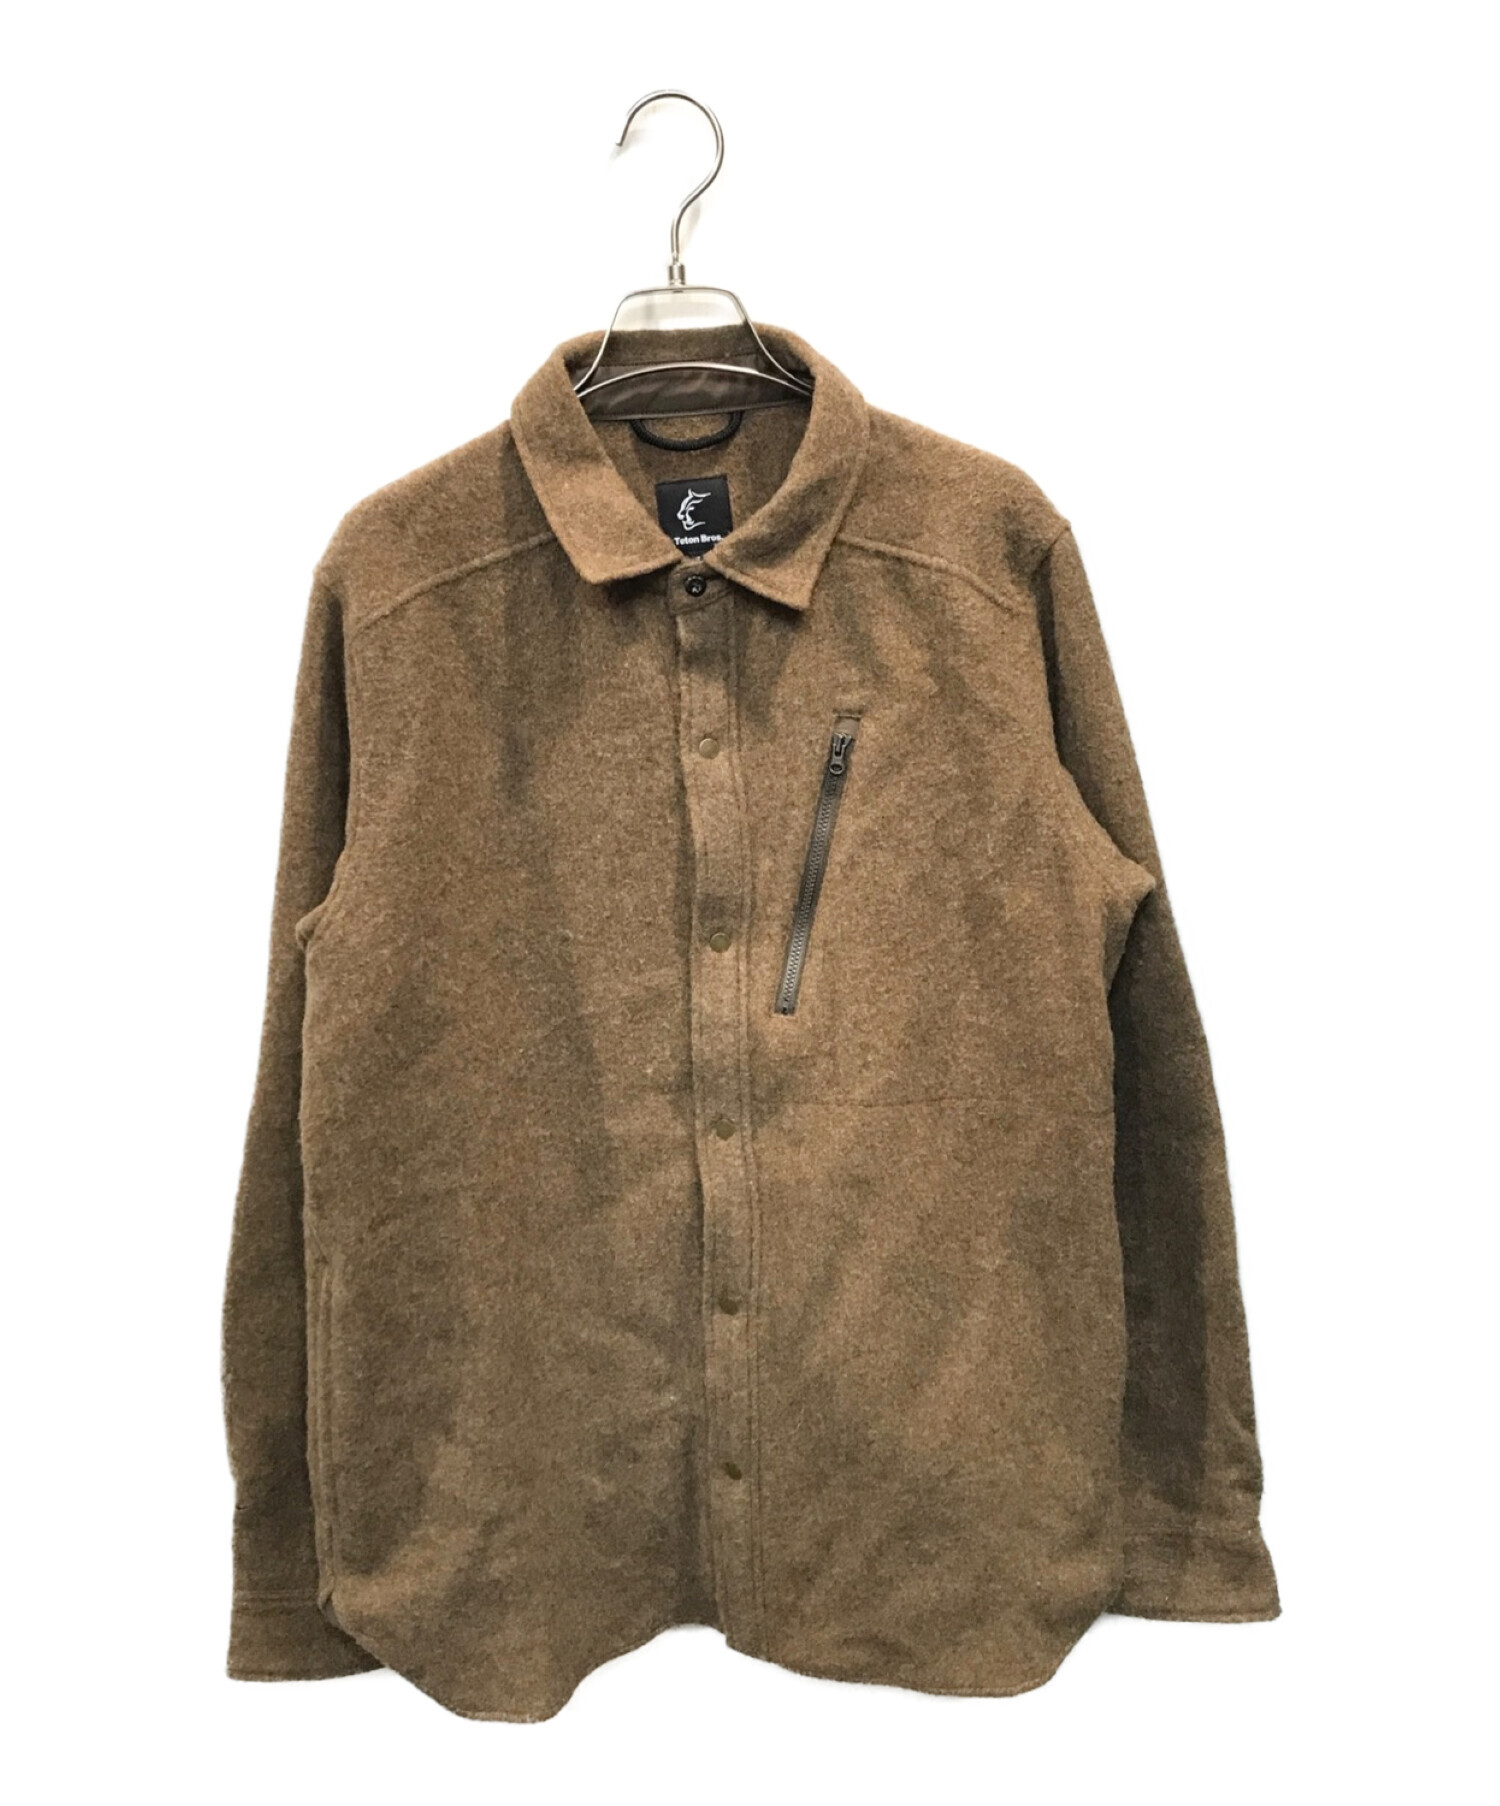 Teton Bros (ティートンブロス) Farallon Plain Shirt/ファラルーンプレーンジャケット ブラウン サイズ:M